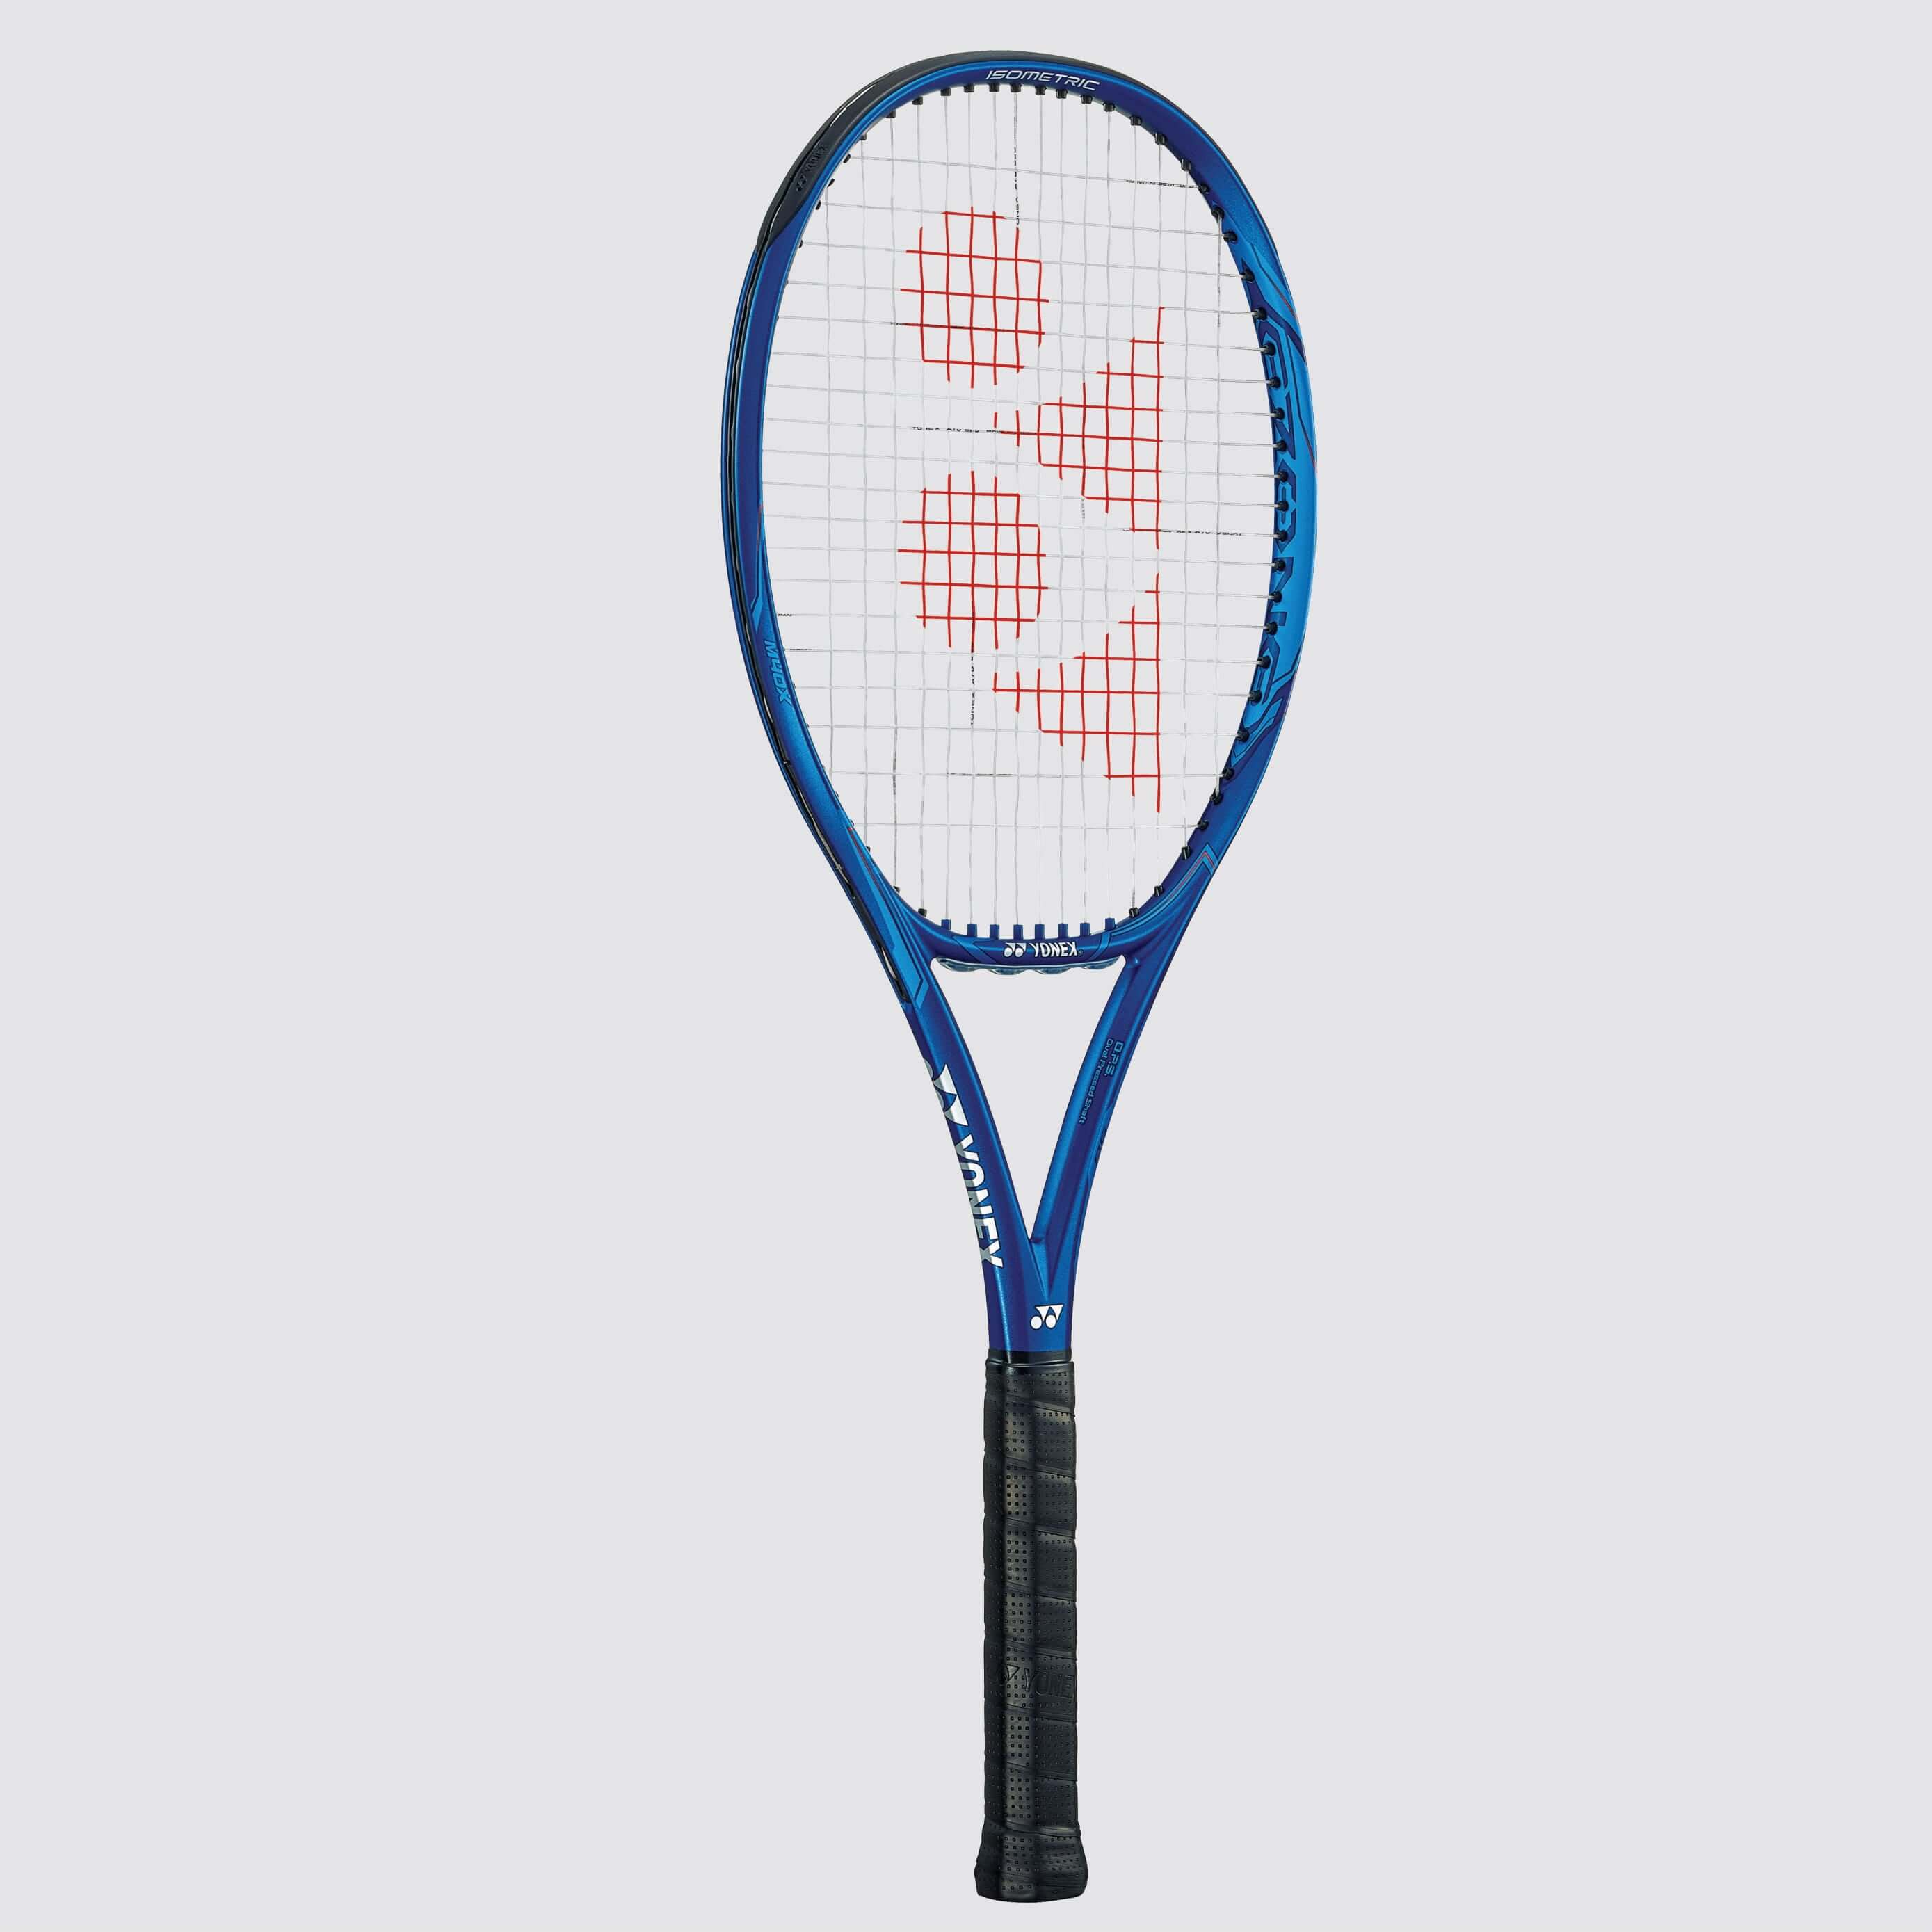 2018 New Large Sweet Spot Yonex Tennis Racquet EZONE 98 305g BLUE G3 UNSTRUNG 